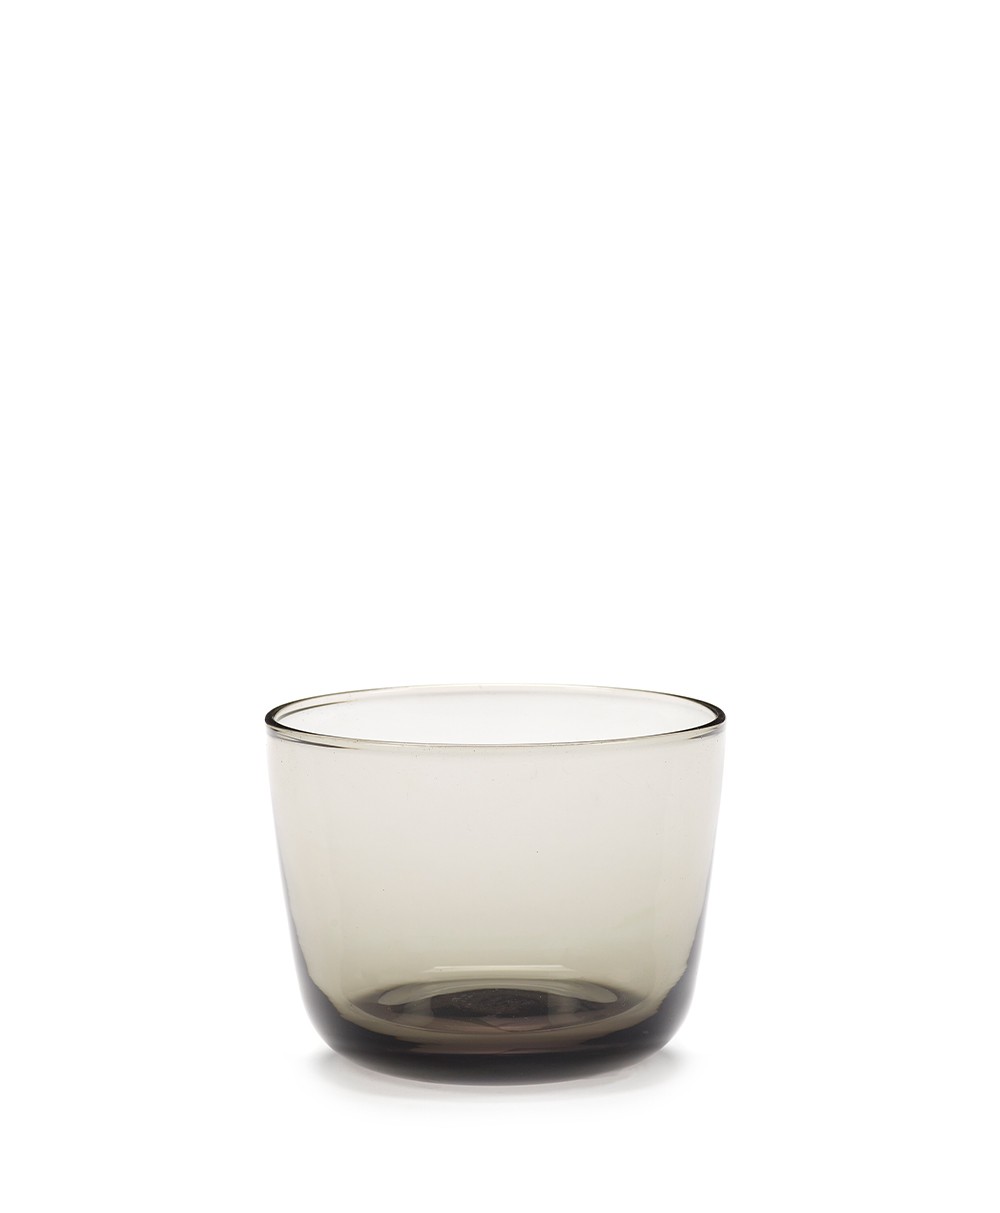 Das Wasserglas CENA in smoky grey von Serax aus der Kollektion von Vincent Van Duysen im RAUM concept store